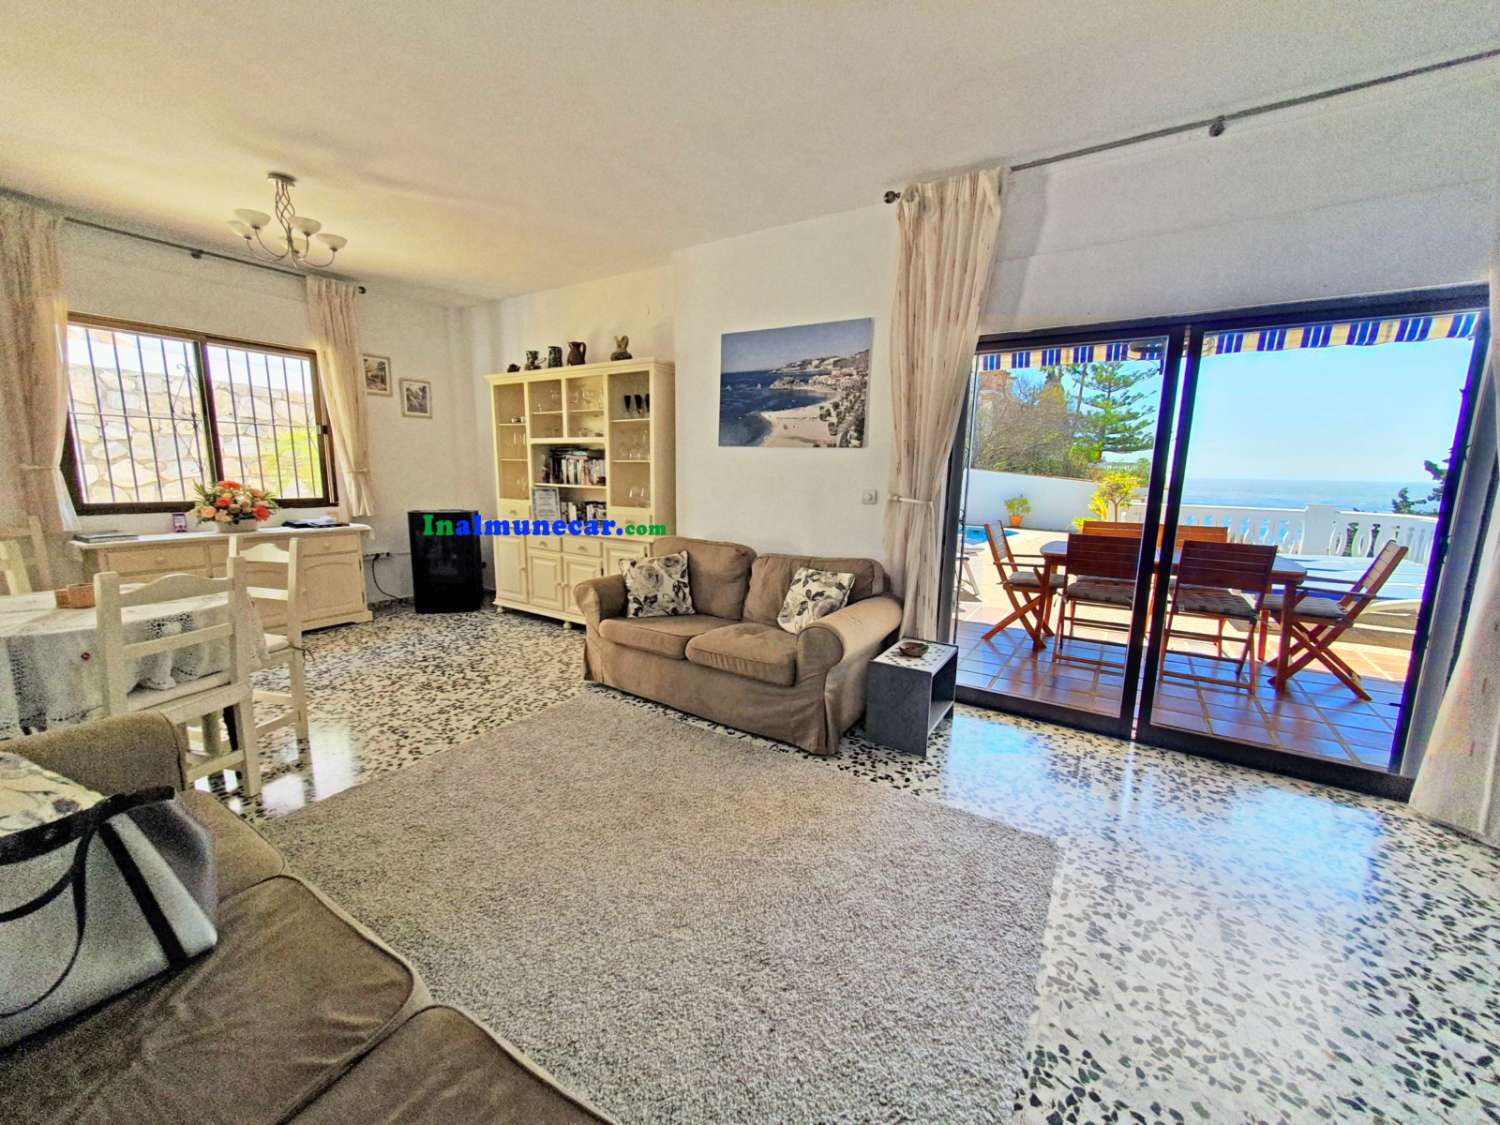 Villa til salg i Almuñécar med fantastisk havudsigt, have og garage – tæt på strand og restauranter